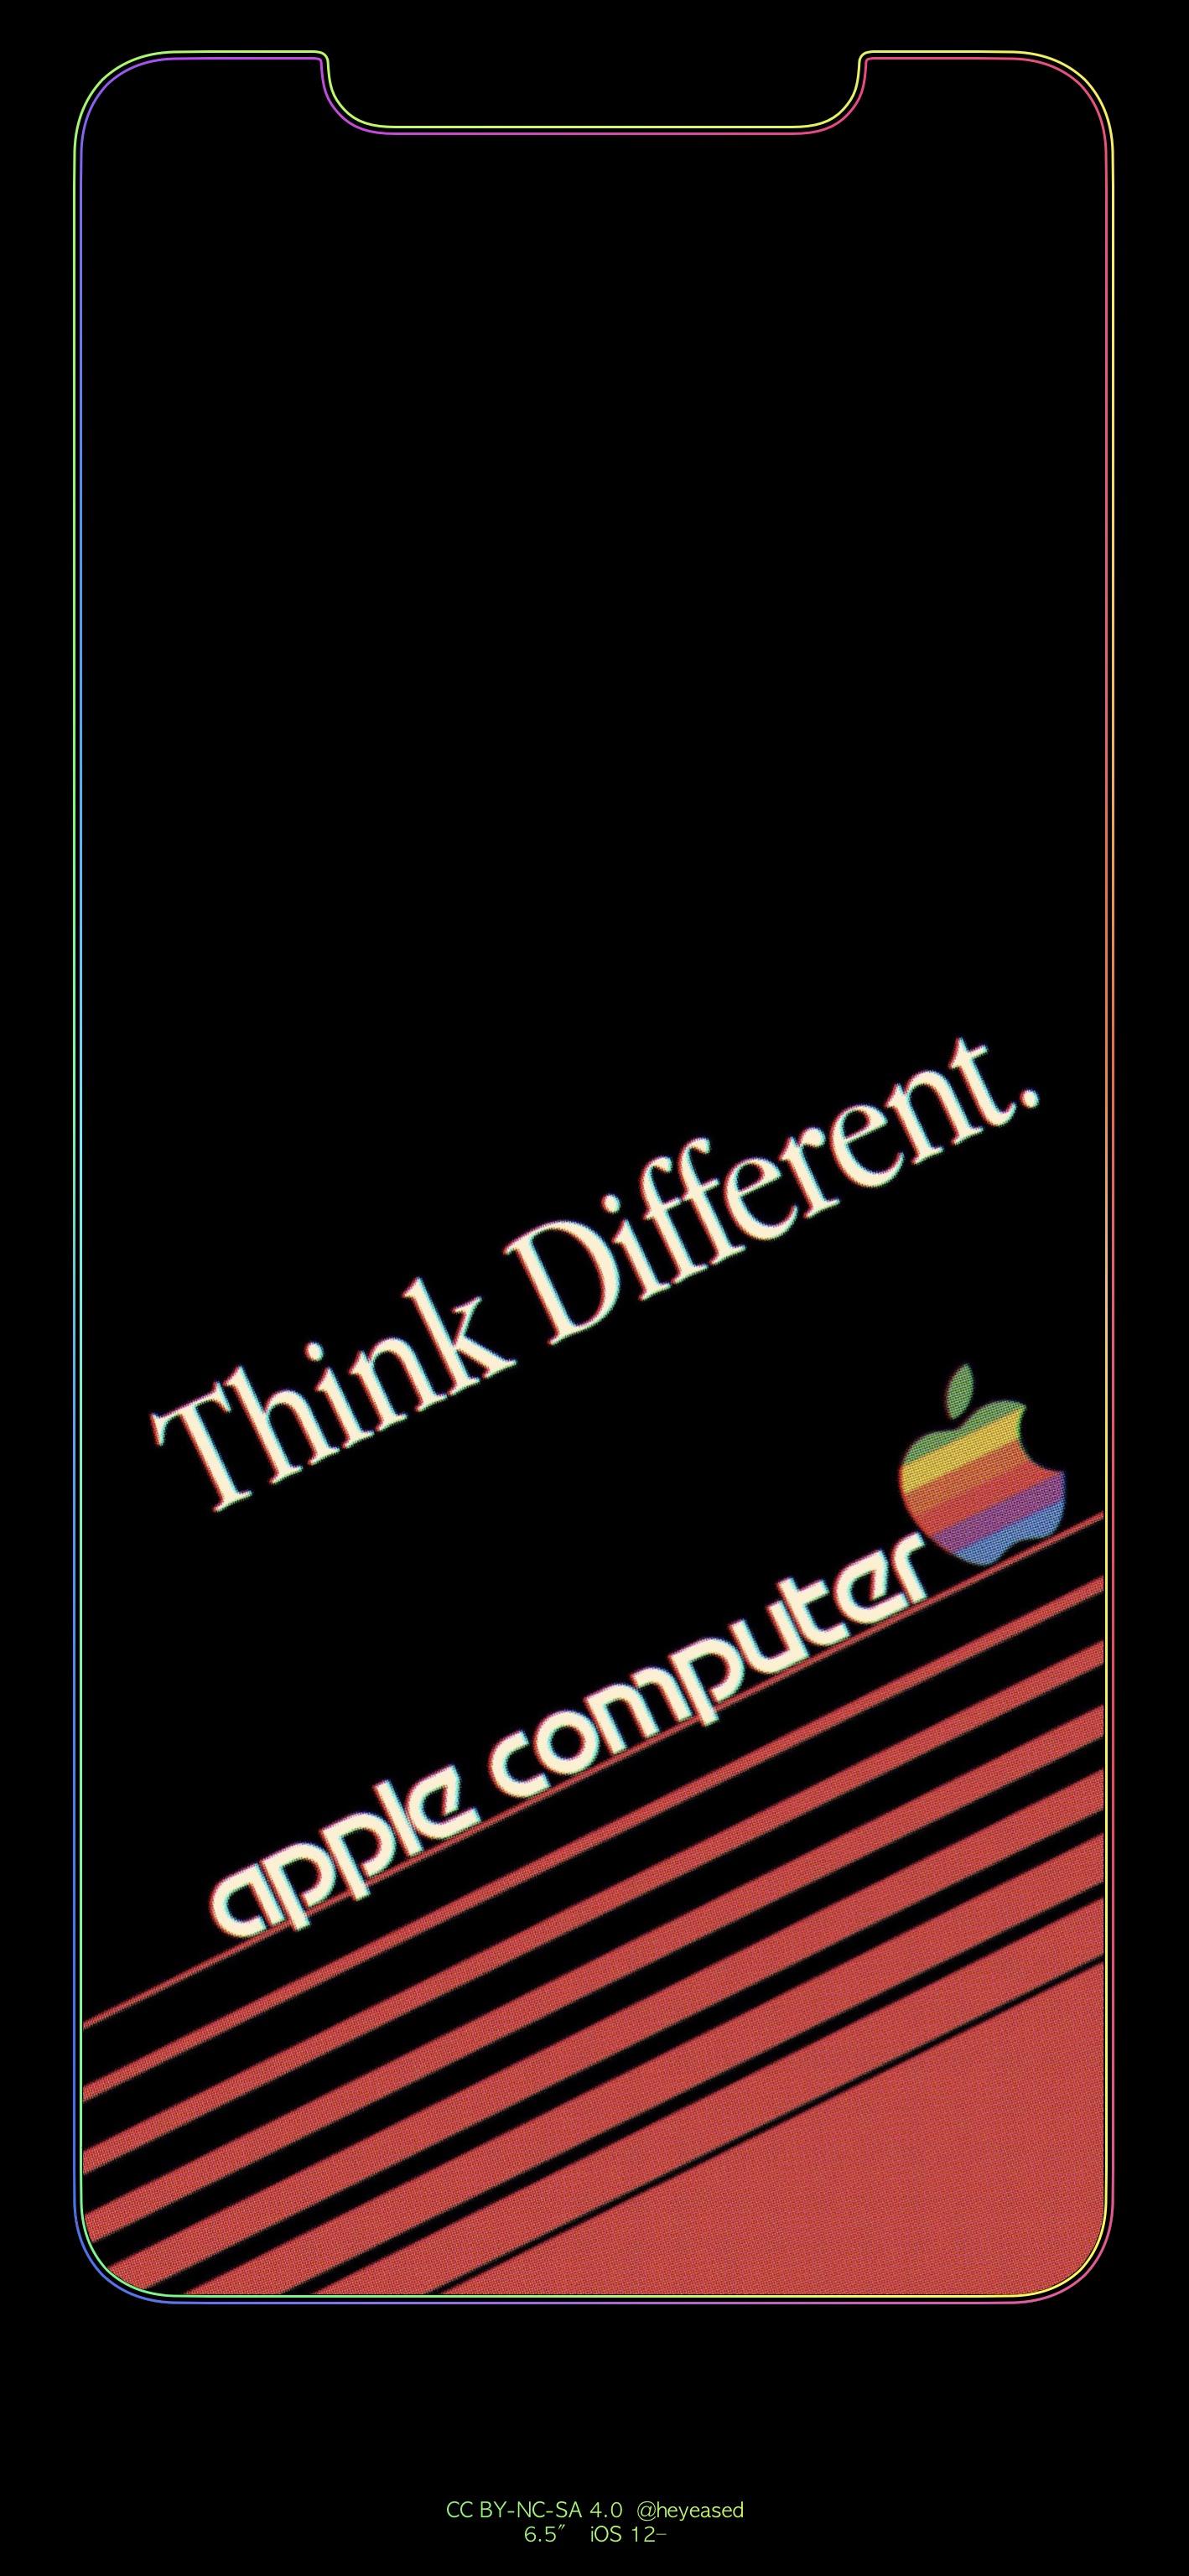 OC Vintage Inspired Apple Computer, Inc. Wallpapers - Mac, iPhone & iPad :  r/VintageApple